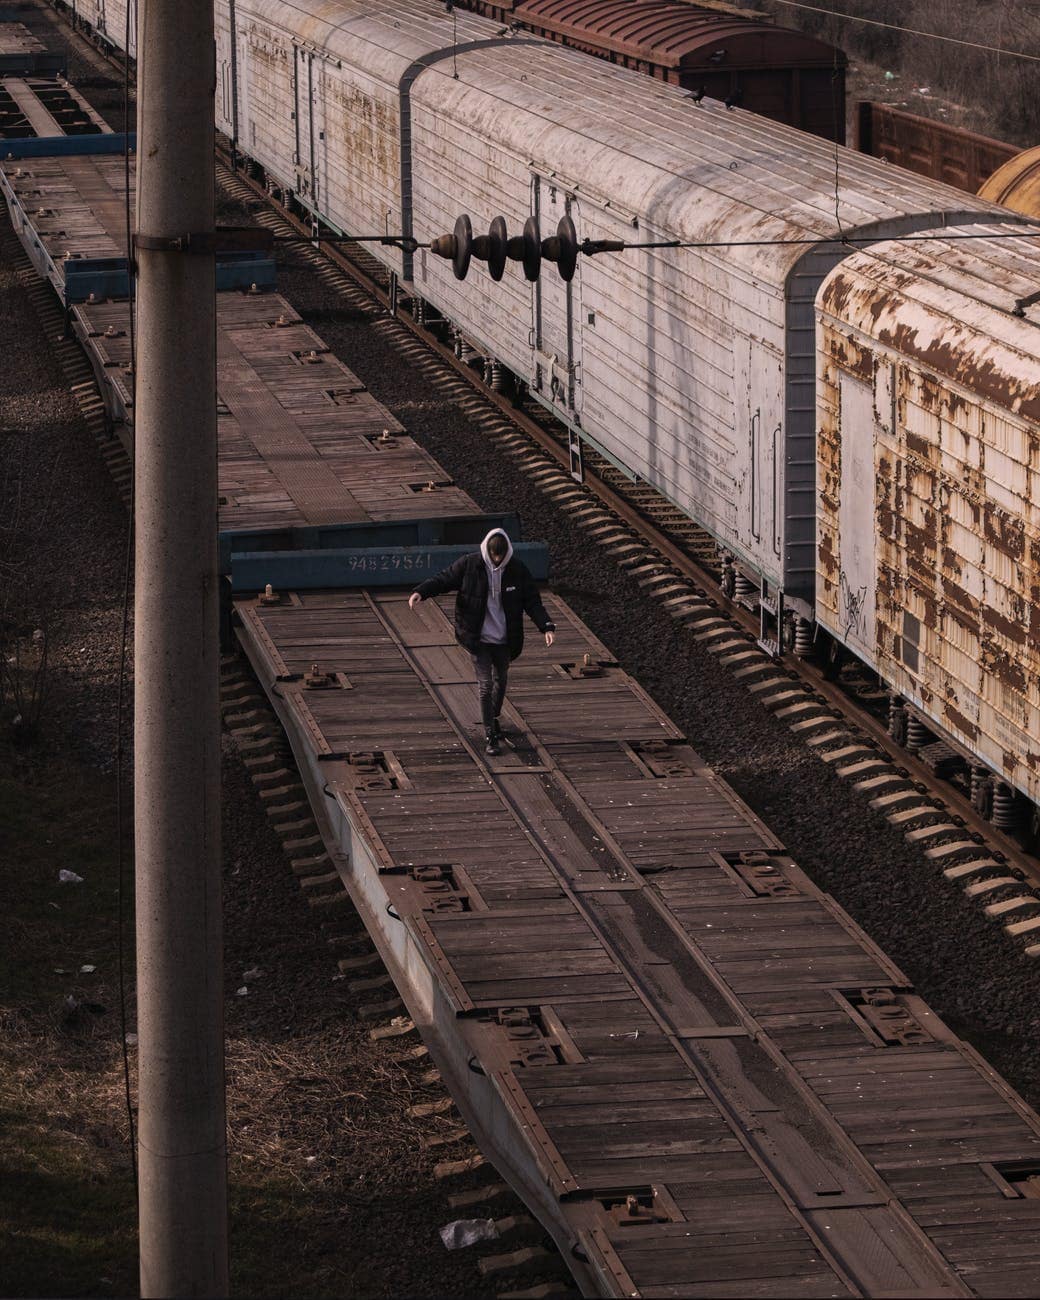 man in black jacket walking on train car platform